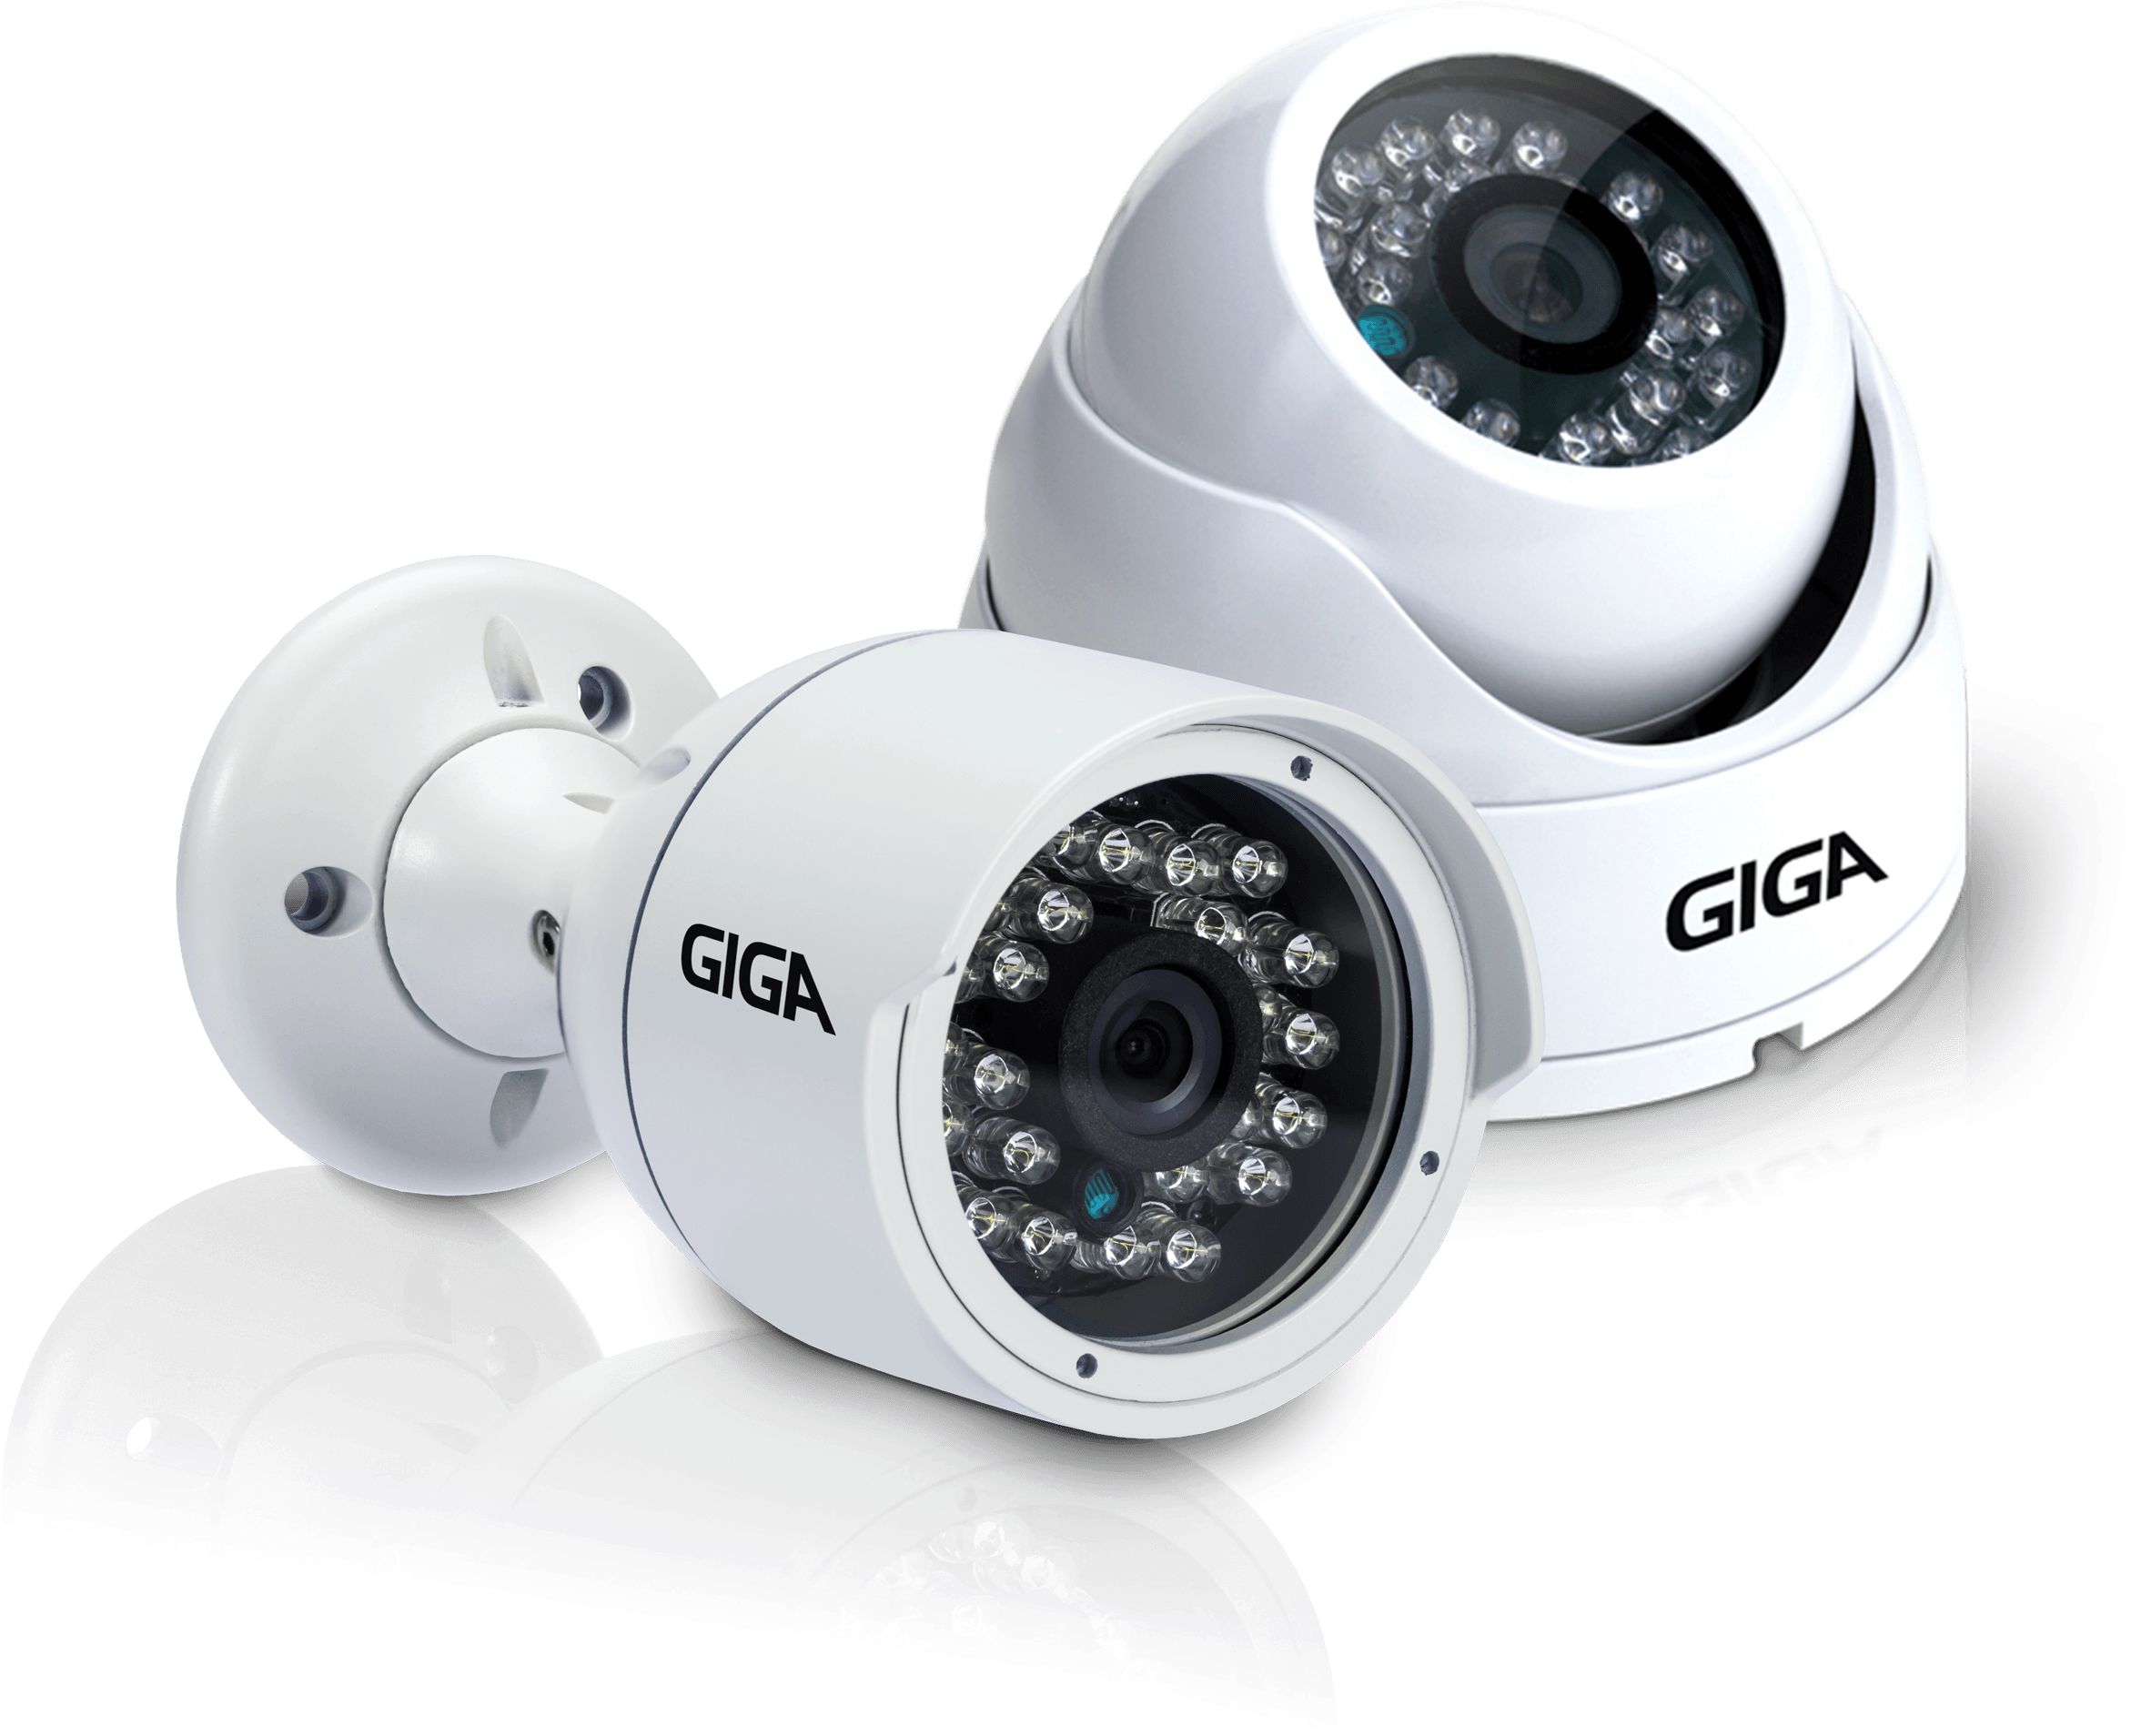 Cameras De Monitoramento Png - Camera Giga Png Clipart (2355x1924), Png Download